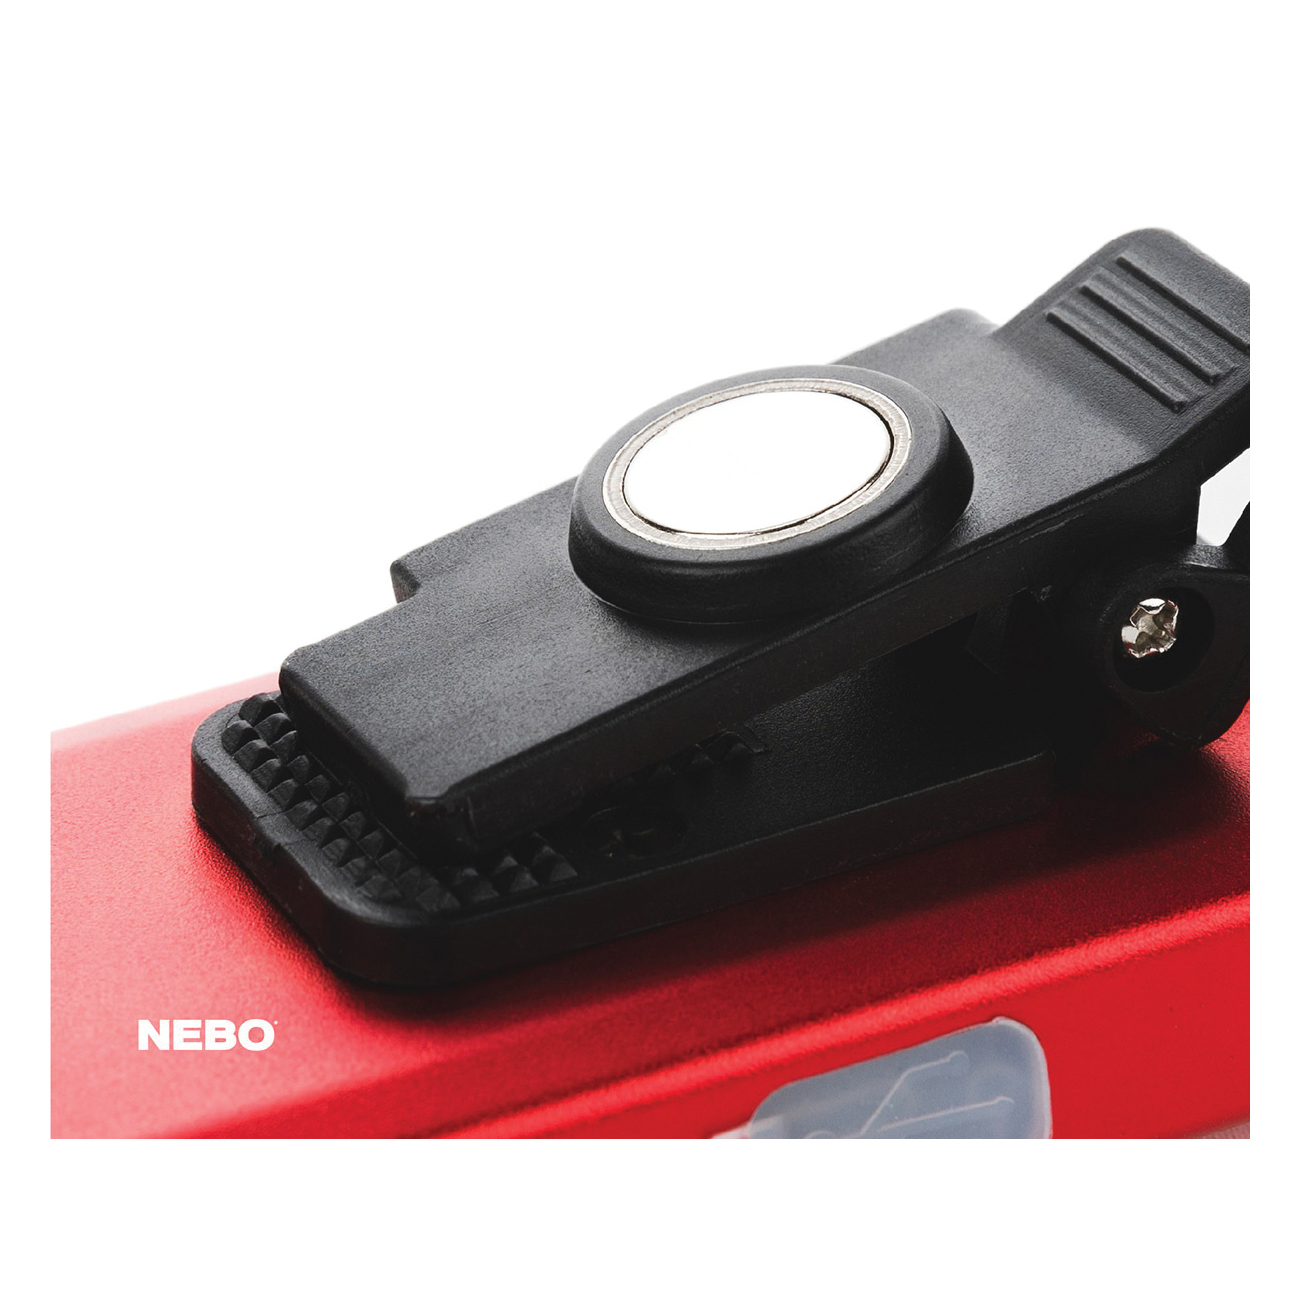 NEBO SLIM 6694 Bright Pocket Light, Battery, LED Lamp, 50, 500 Lumens - 4